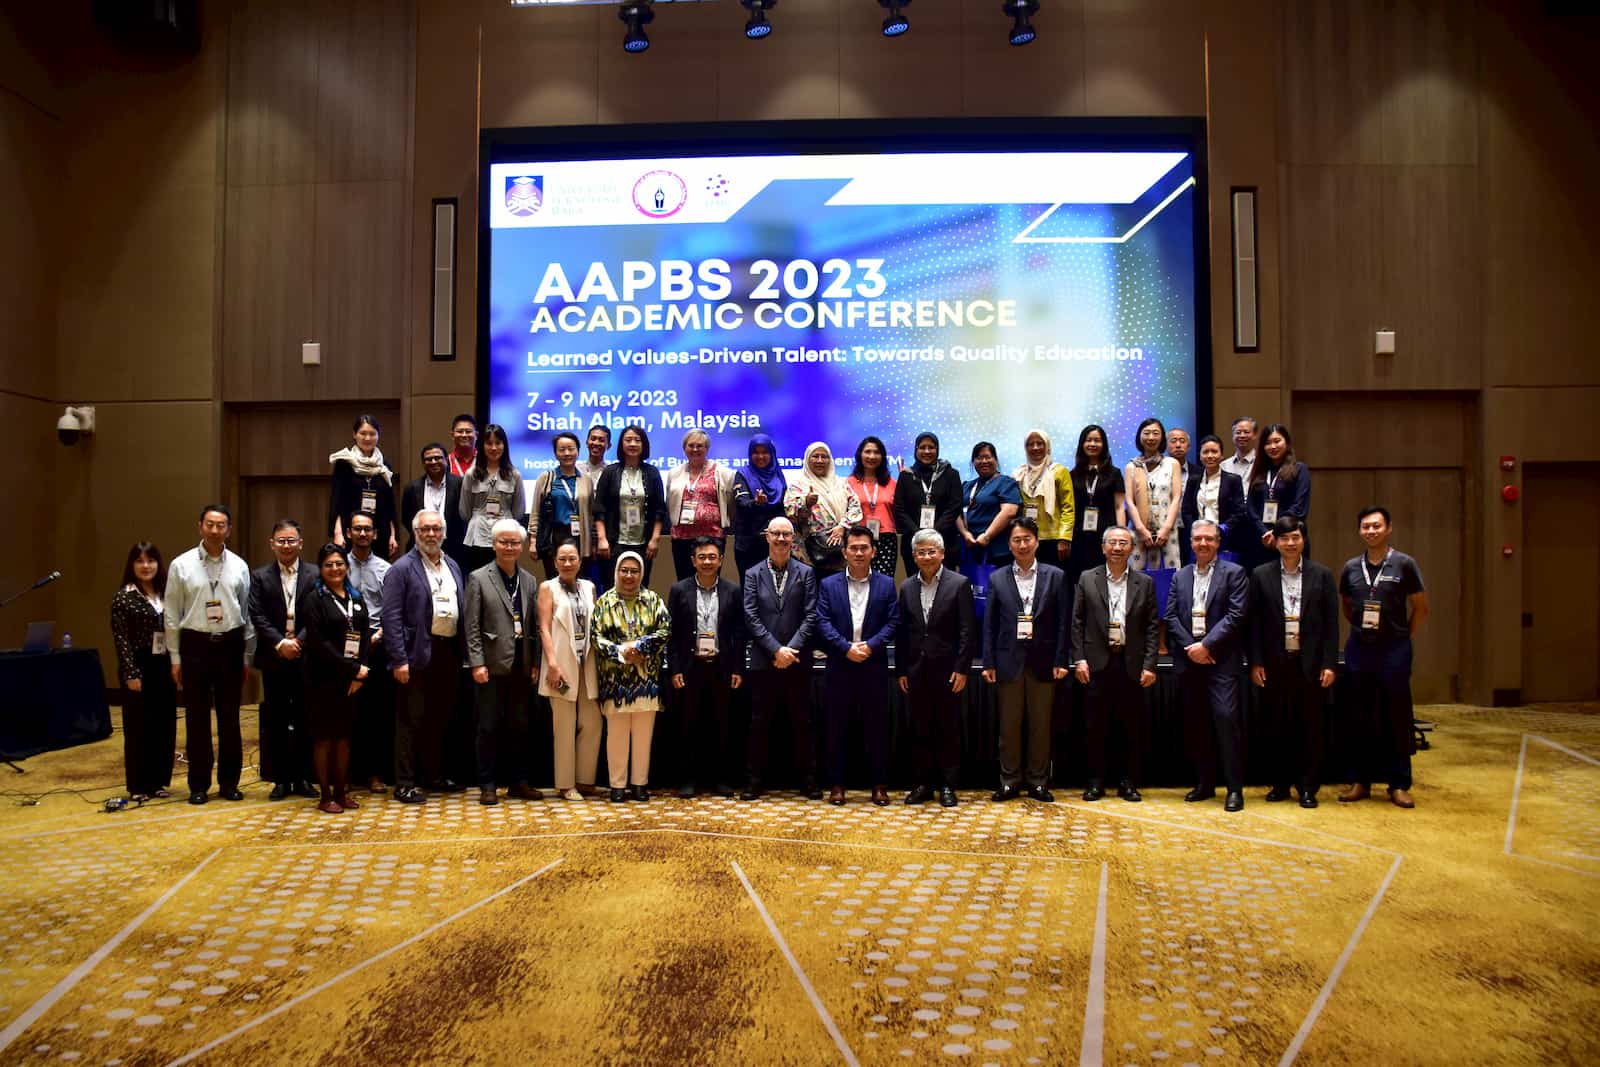 商學院於2023年4月成為亞太商管學院聯合會(Association of Asia Pacific Business Schools, AAPBS)成員